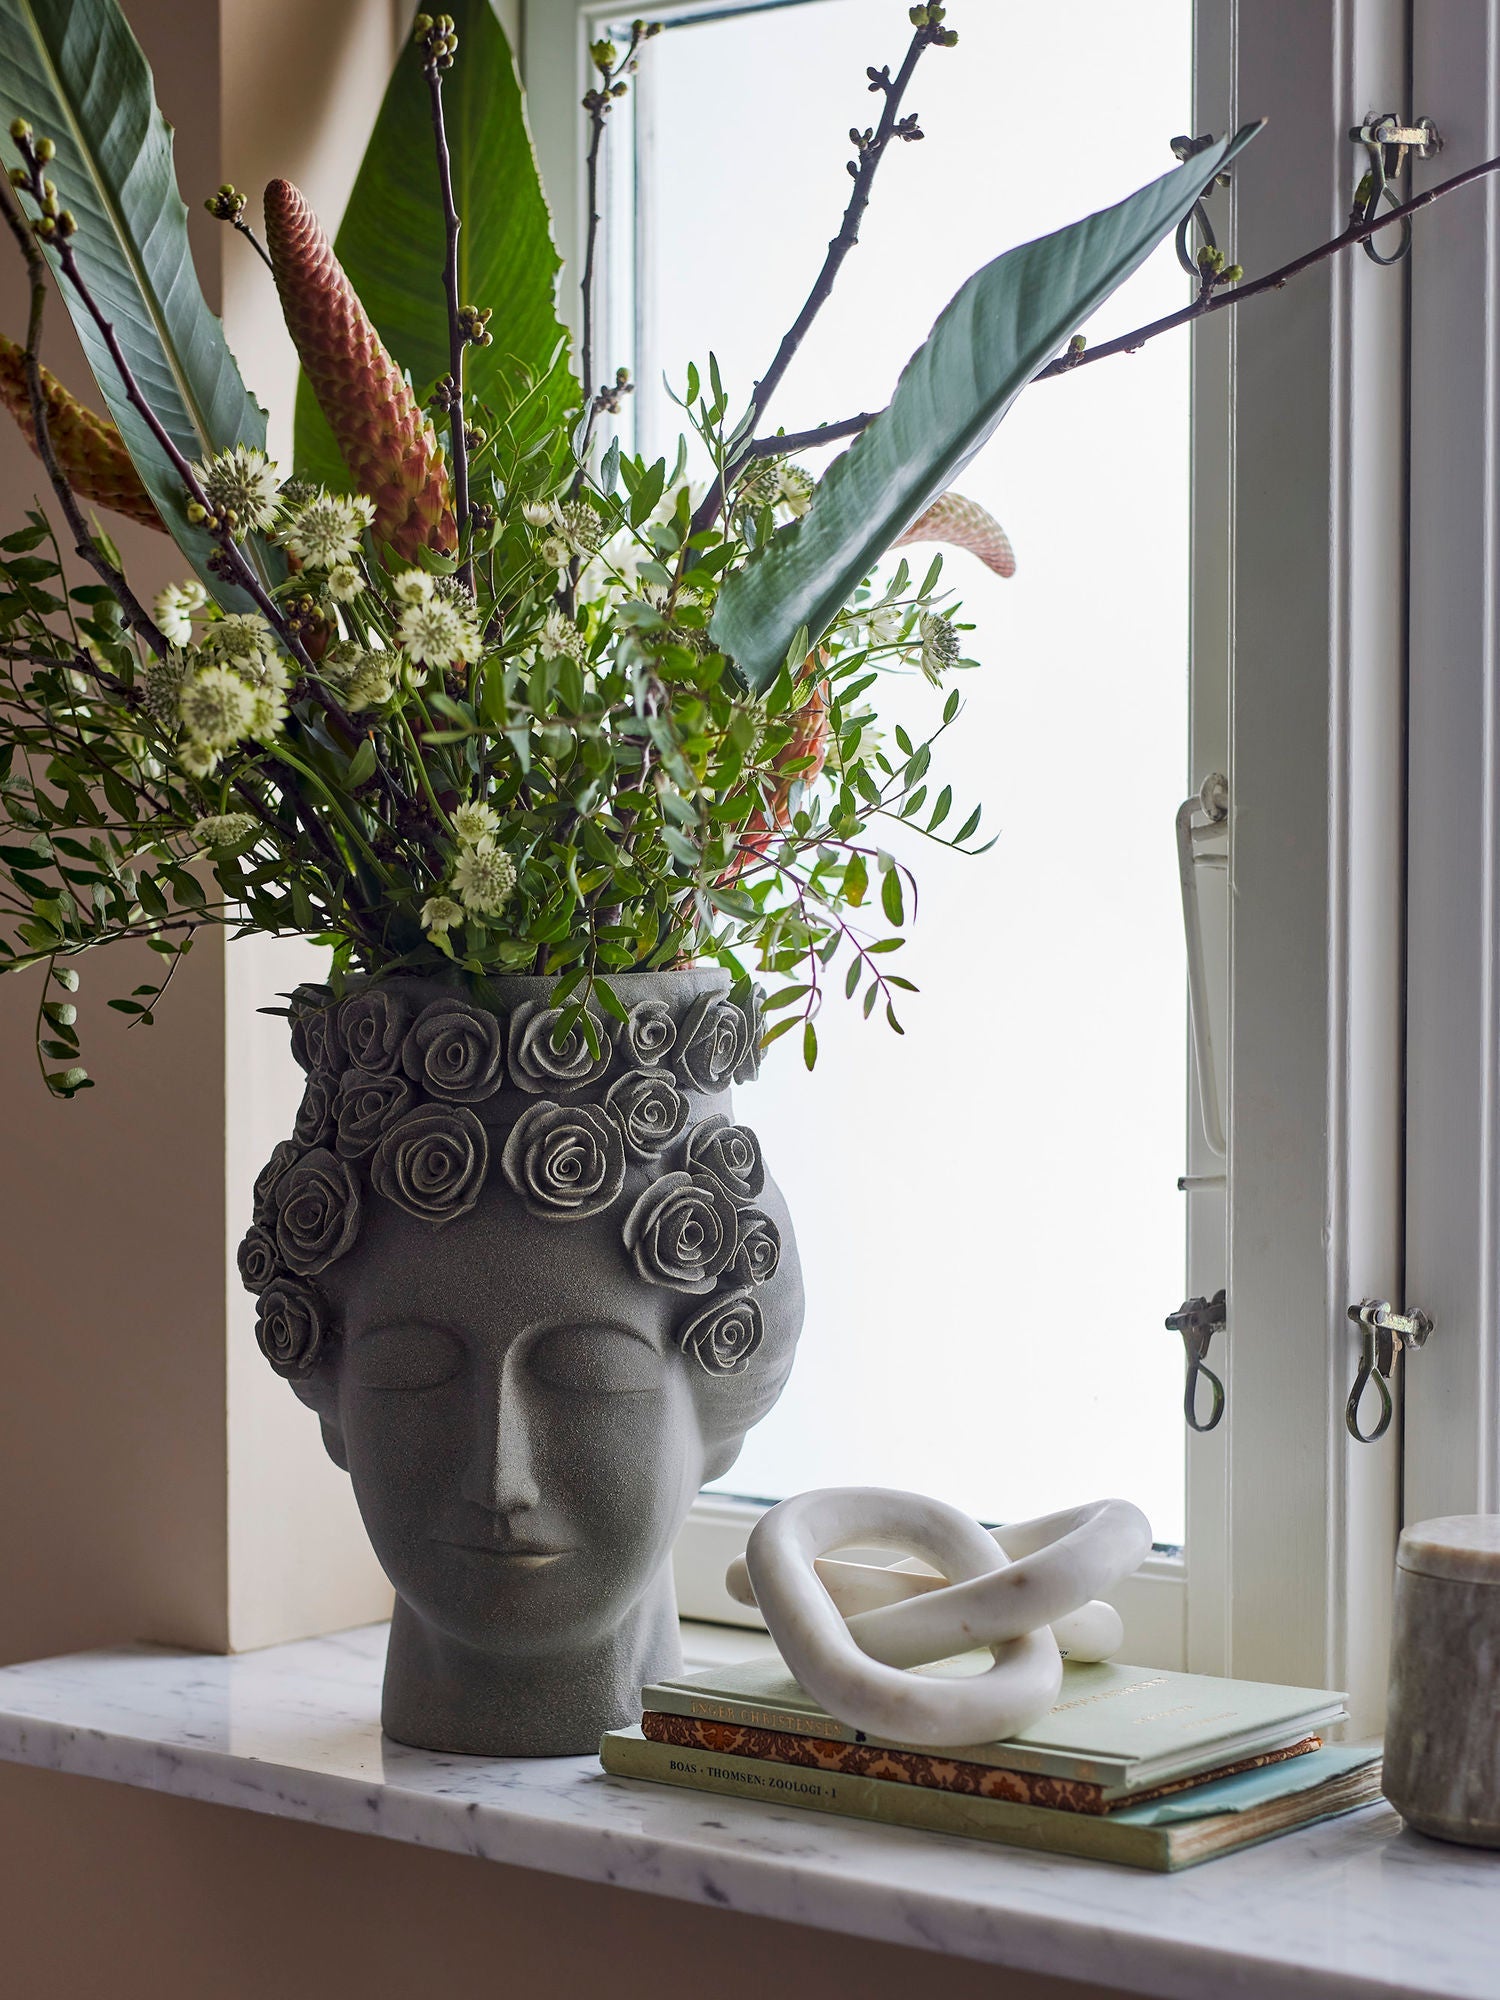 Bloomingville Akira Vase, Grey, Stoneware